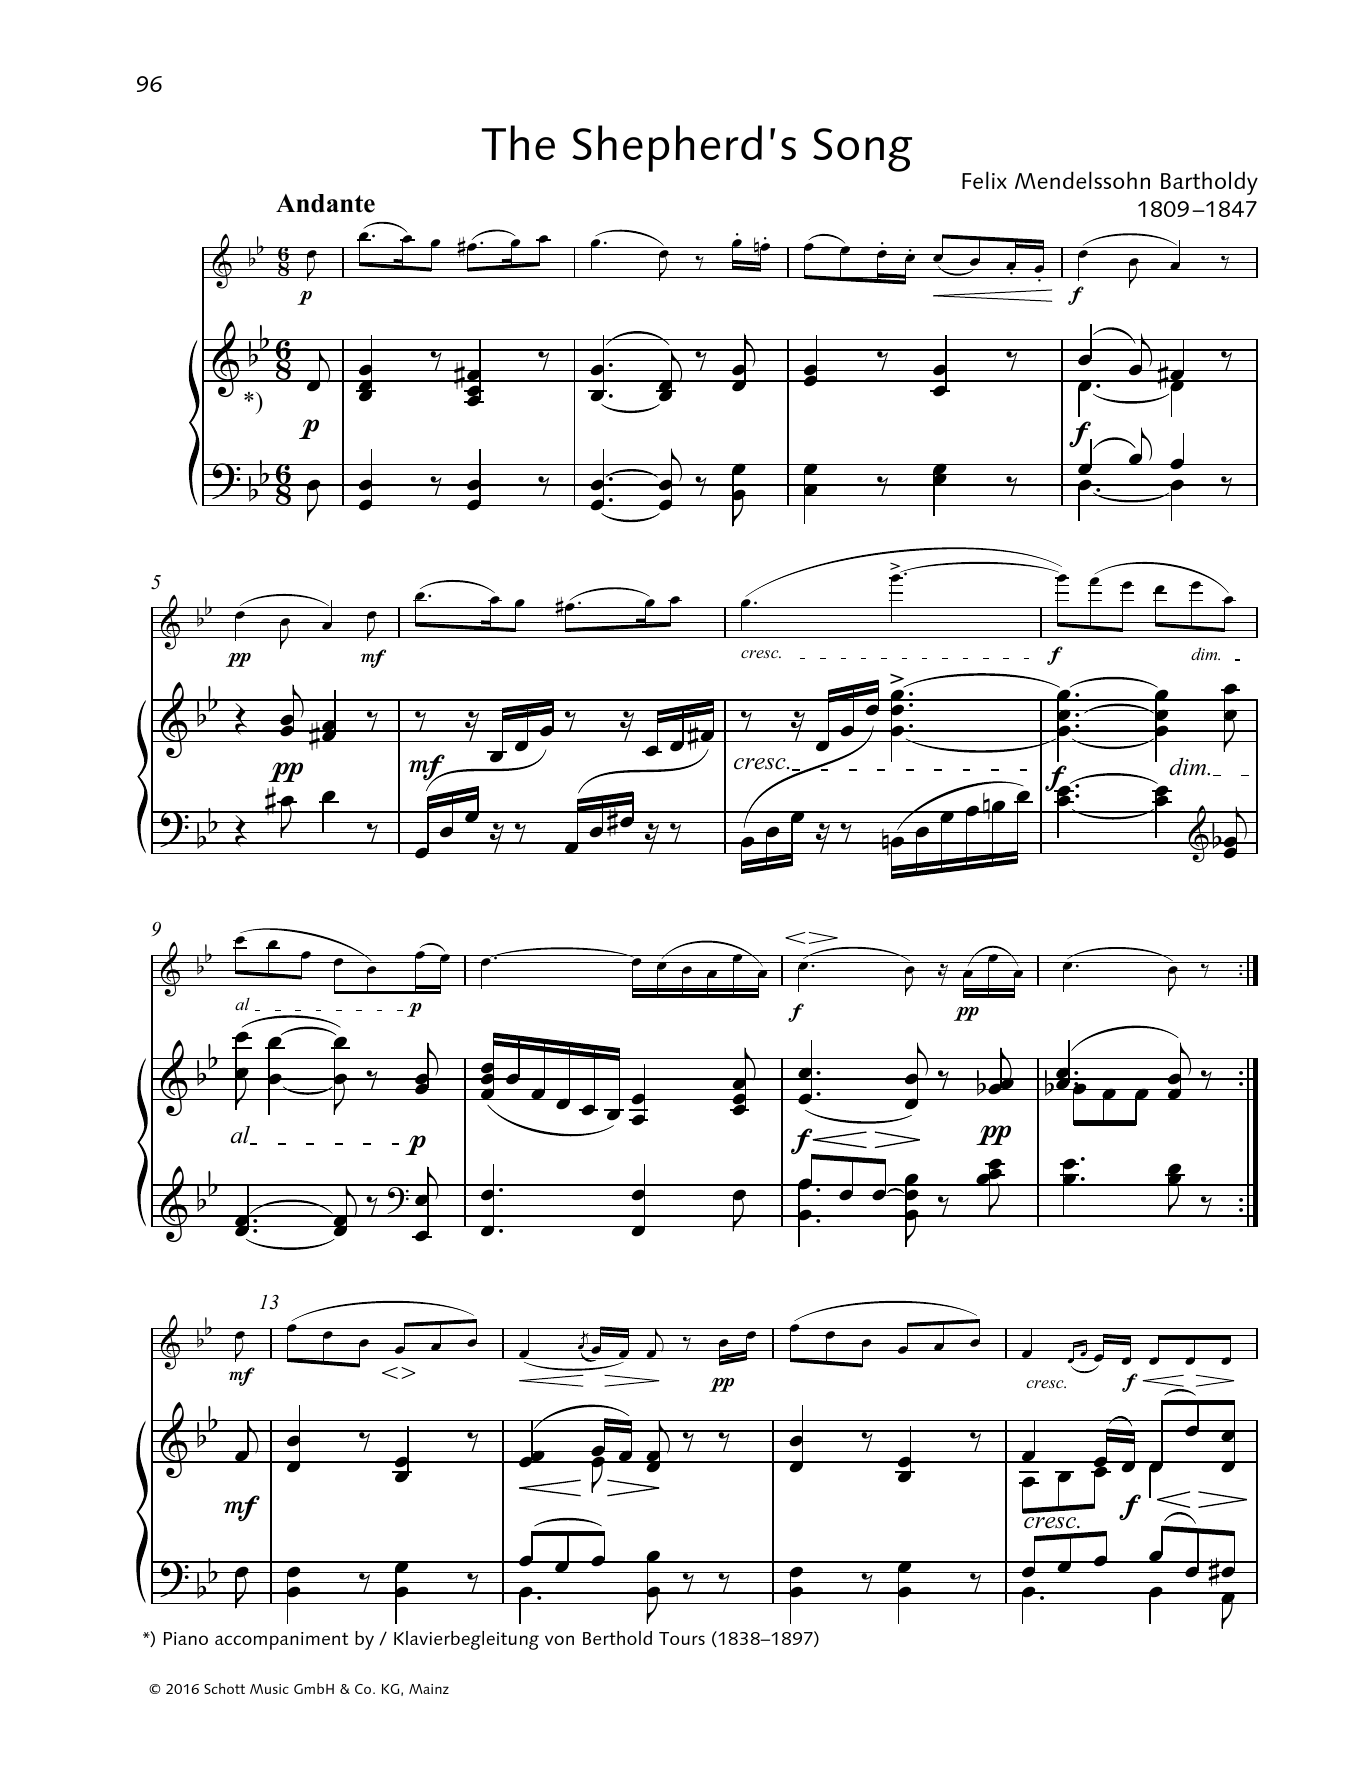 Download Felix Mendelssohn Bartholdy The Shepherd's Song Sheet Music